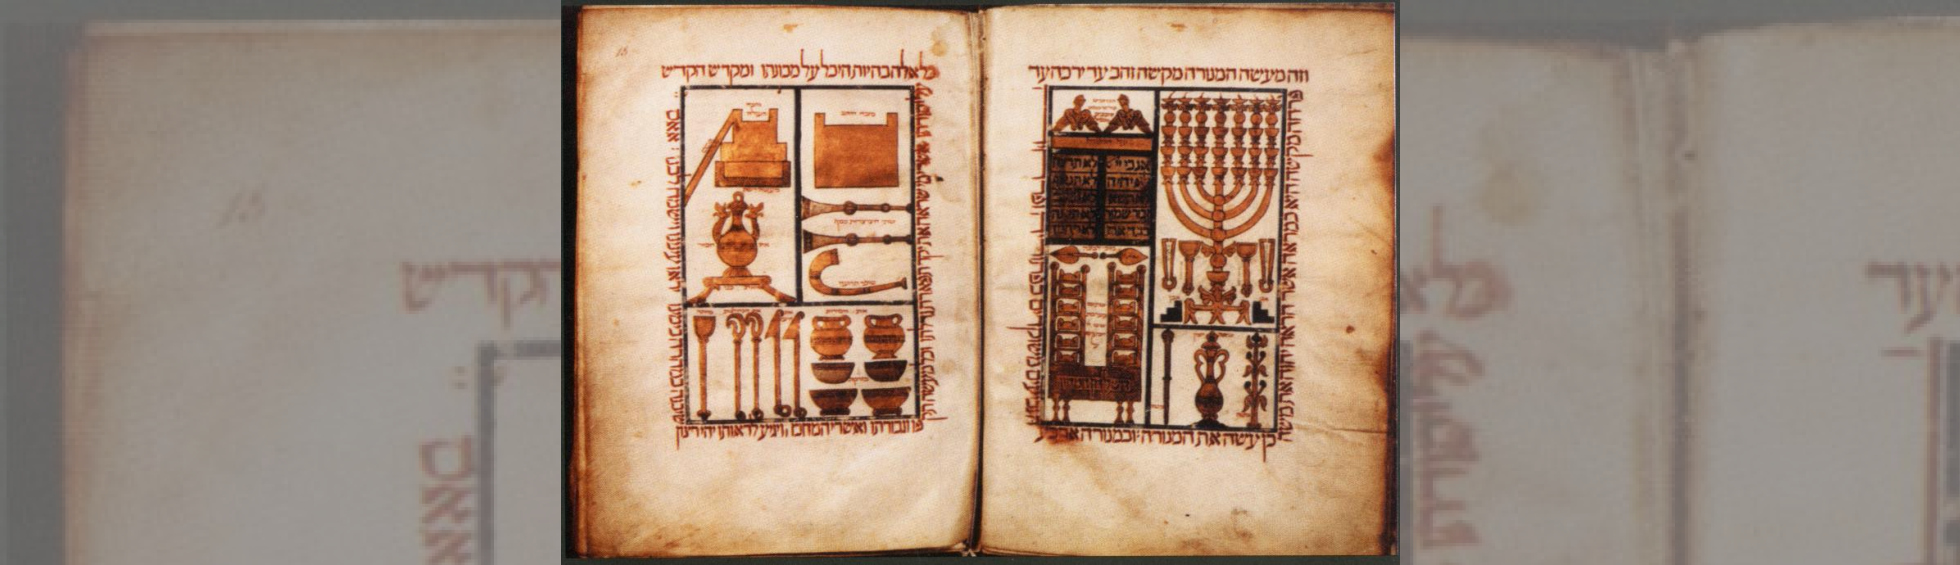 Les instruments du temple juif:menorah,tabernacle, couteaux, flacon d'encens et de parfum,écuelles, tompes de musique,